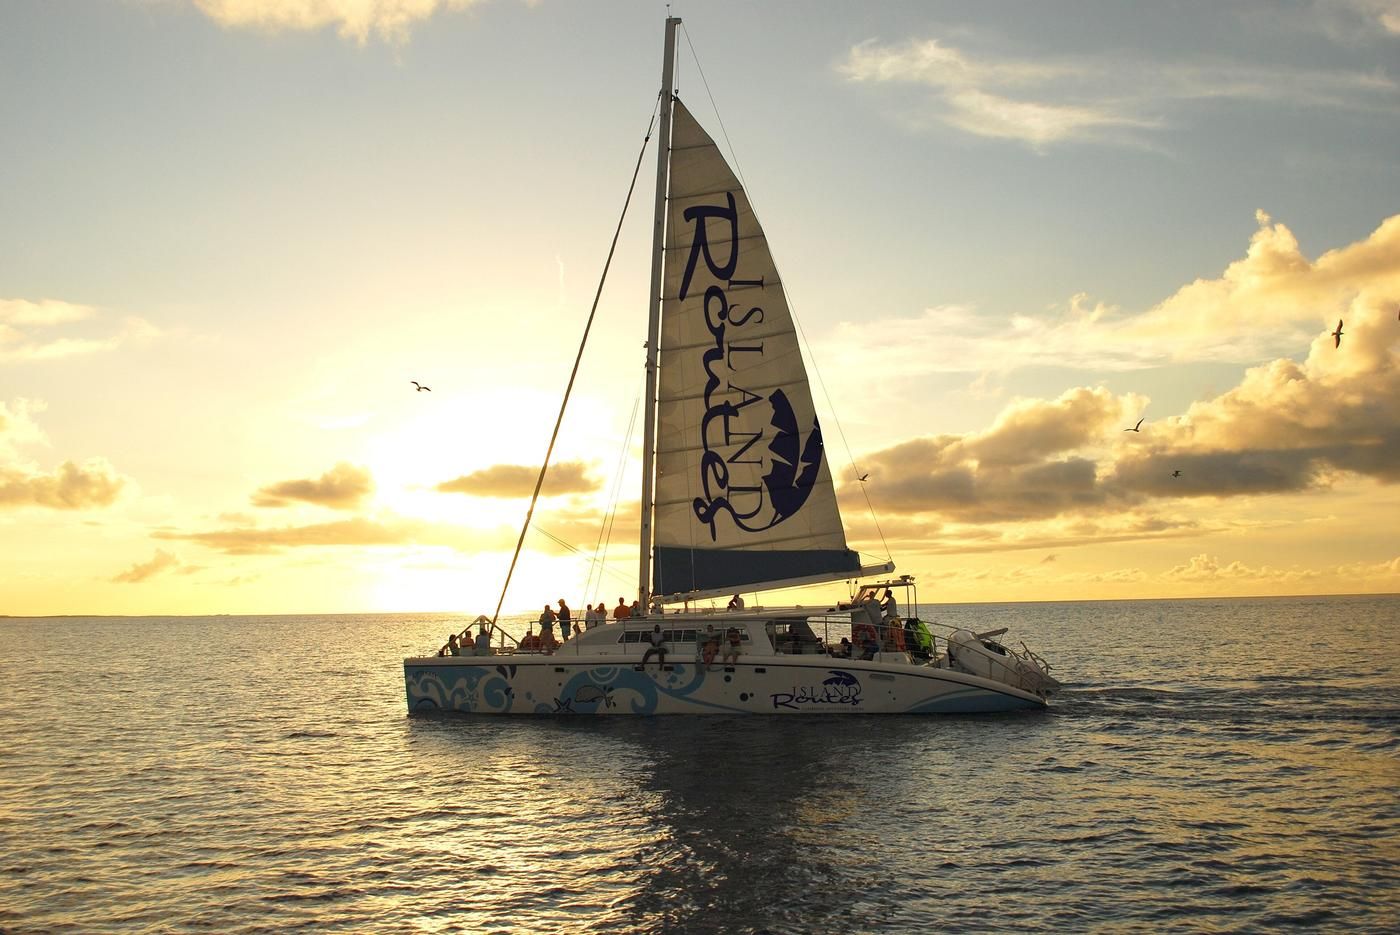 reggae catamaran cruise from montego bay at sunset ride